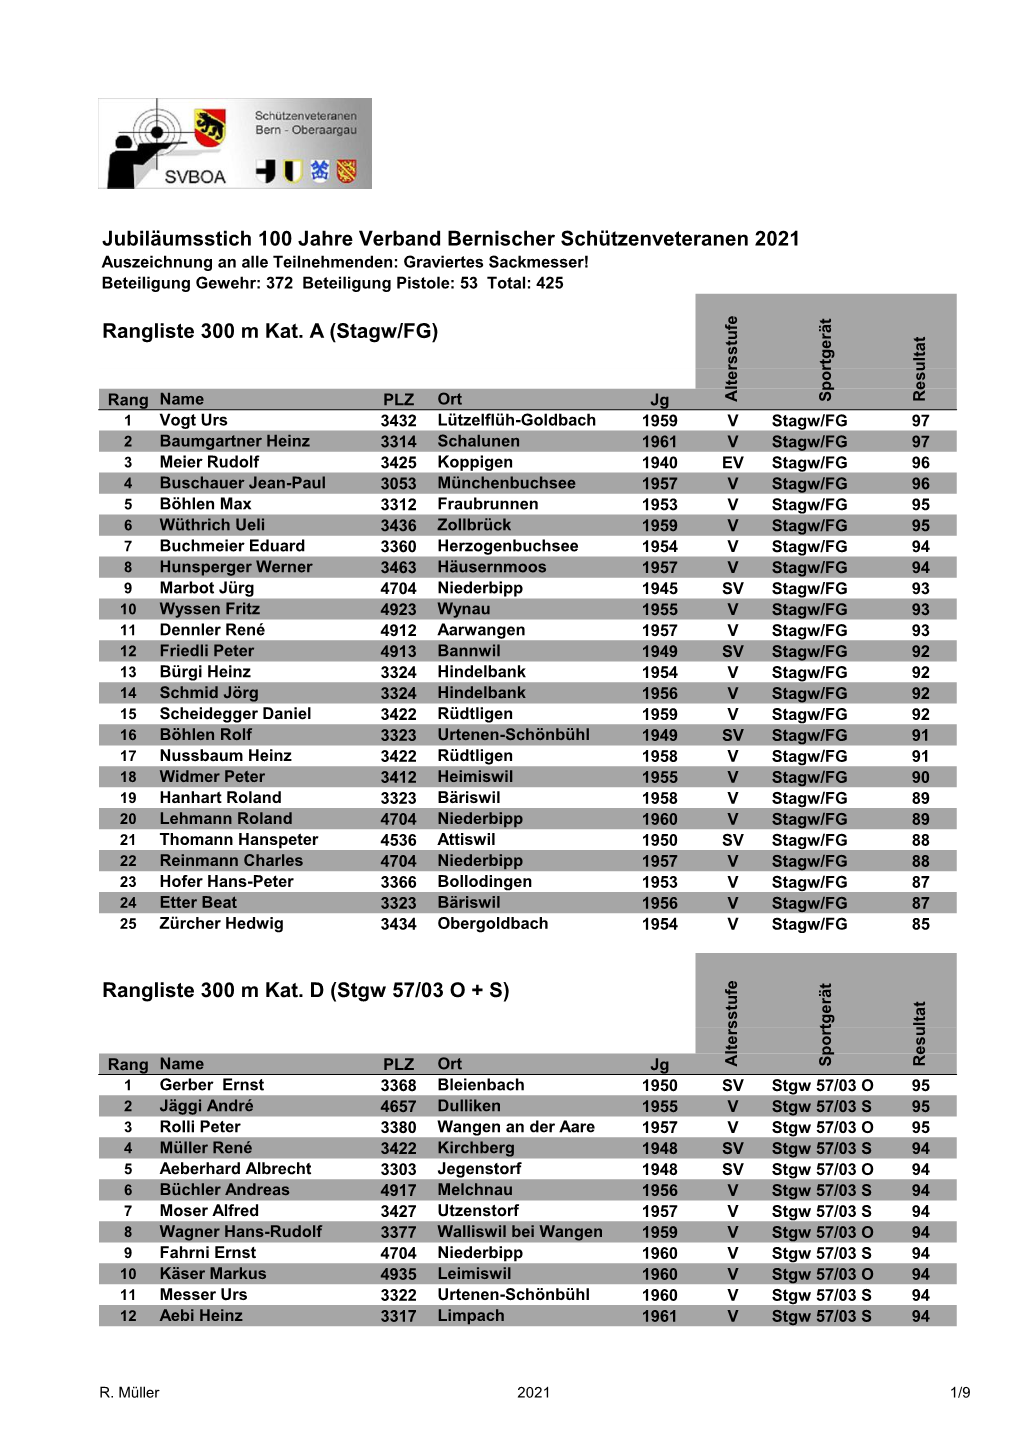 Rangliste 300 M Kat. D (Stgw 57/03 O + S) Jubiläumsstich 100 Jahre Verband Bernischer Schützenveteranen 2021 Rangliste 300